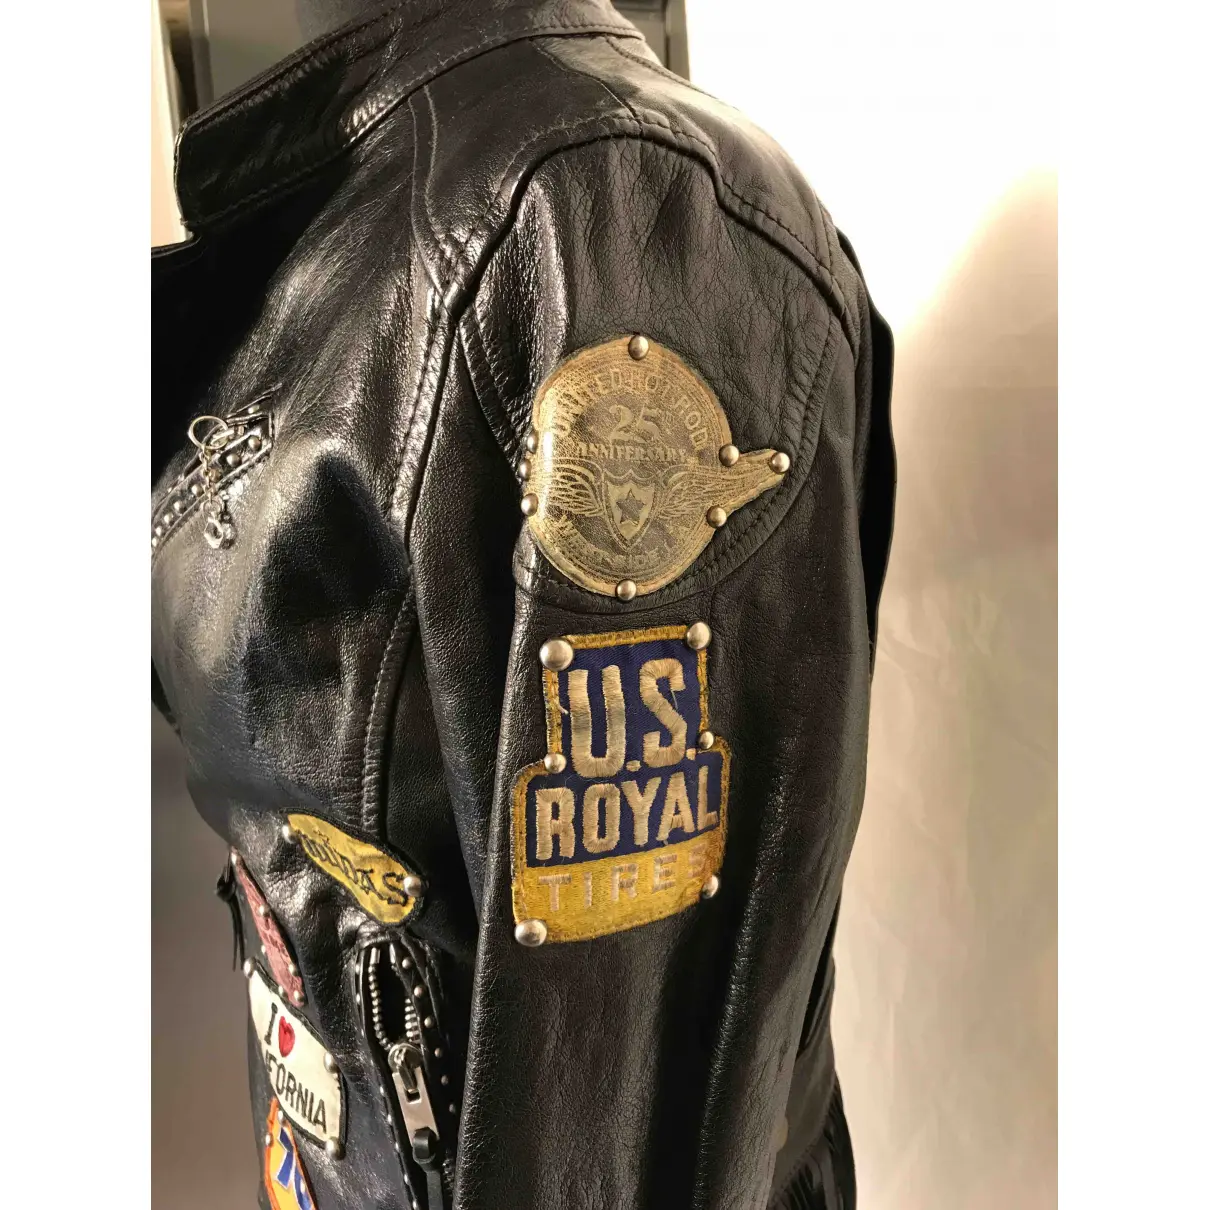 Leather biker jacket Htc